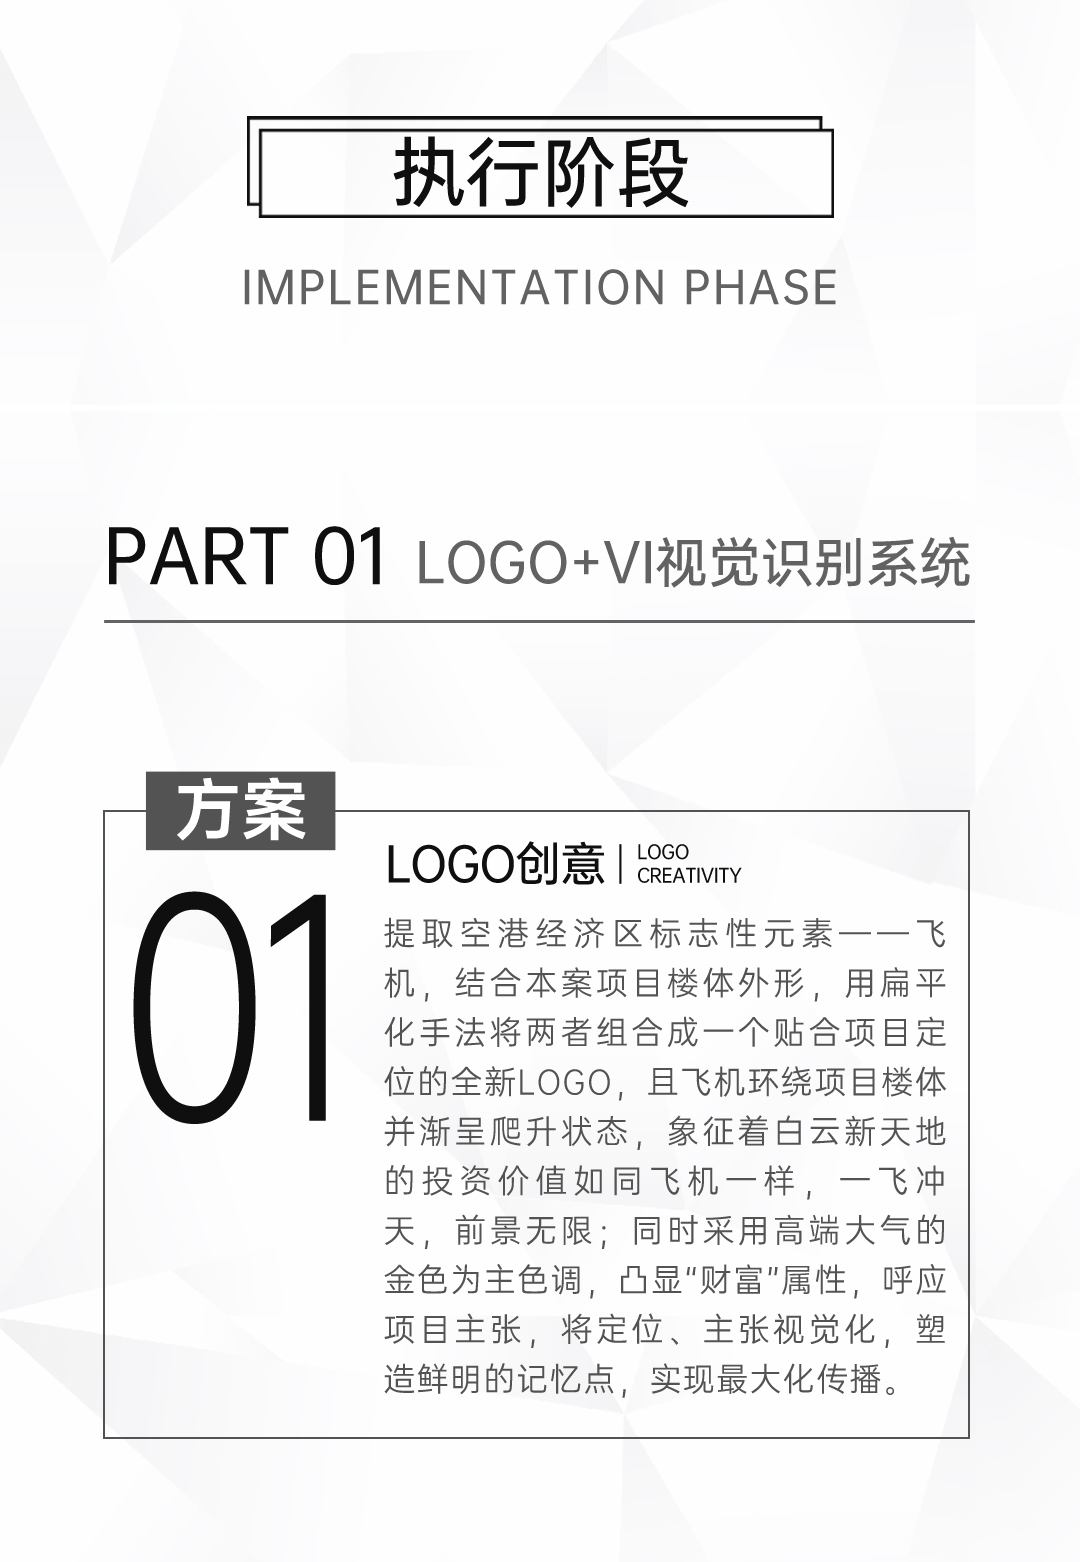 『白云新天地』地产品牌包装 企业VI设计 LOGO设计图2